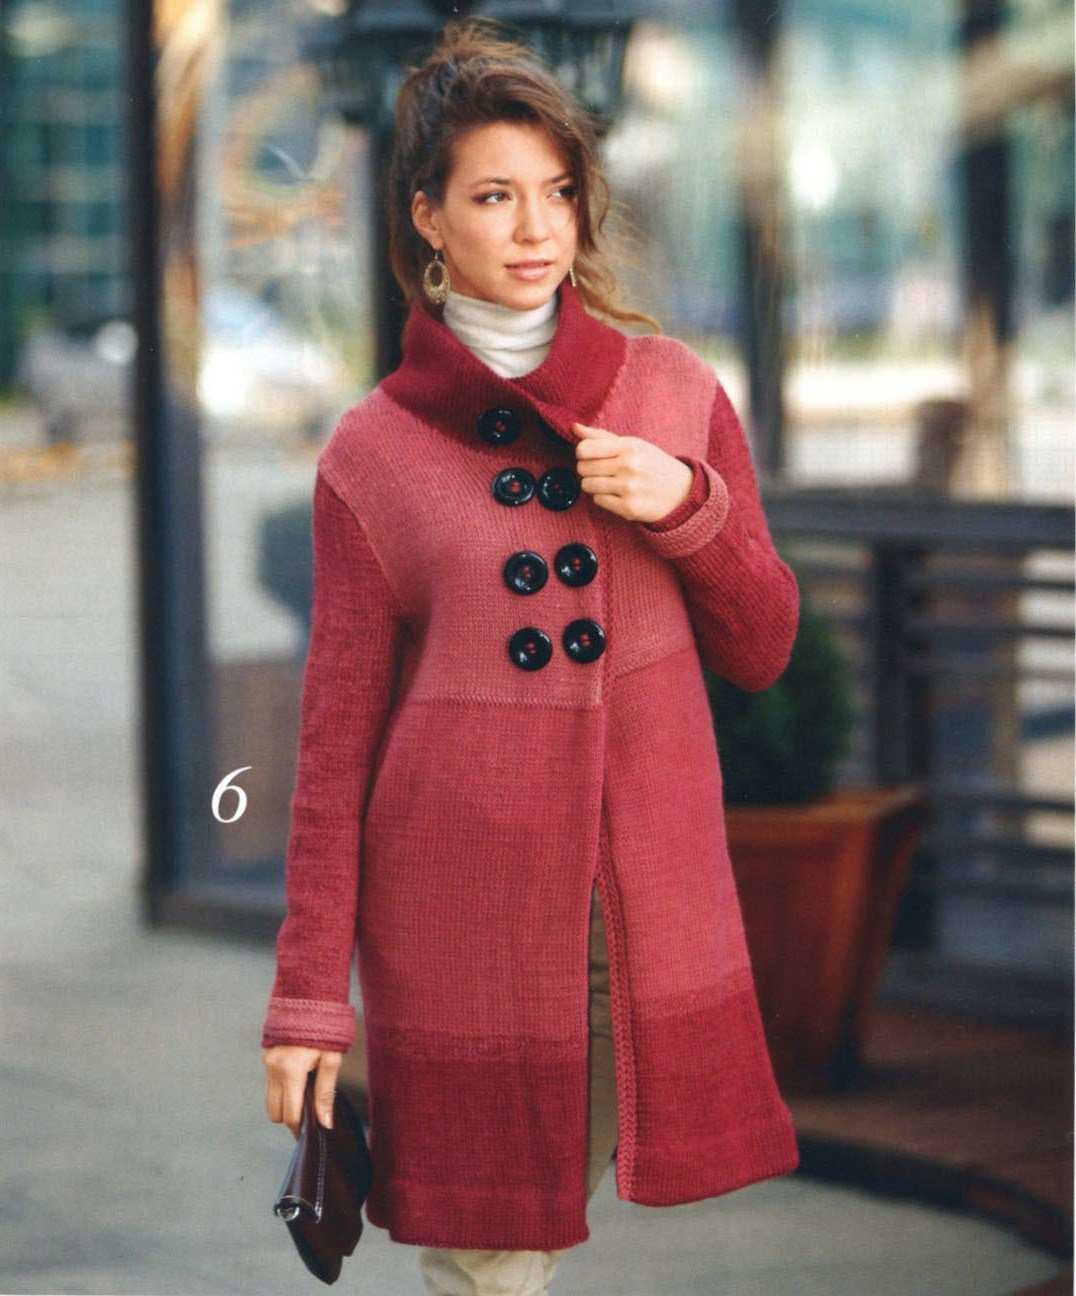 Как связать женское пальто спицами — подробный мастер-класс для начинающих с фото идеями